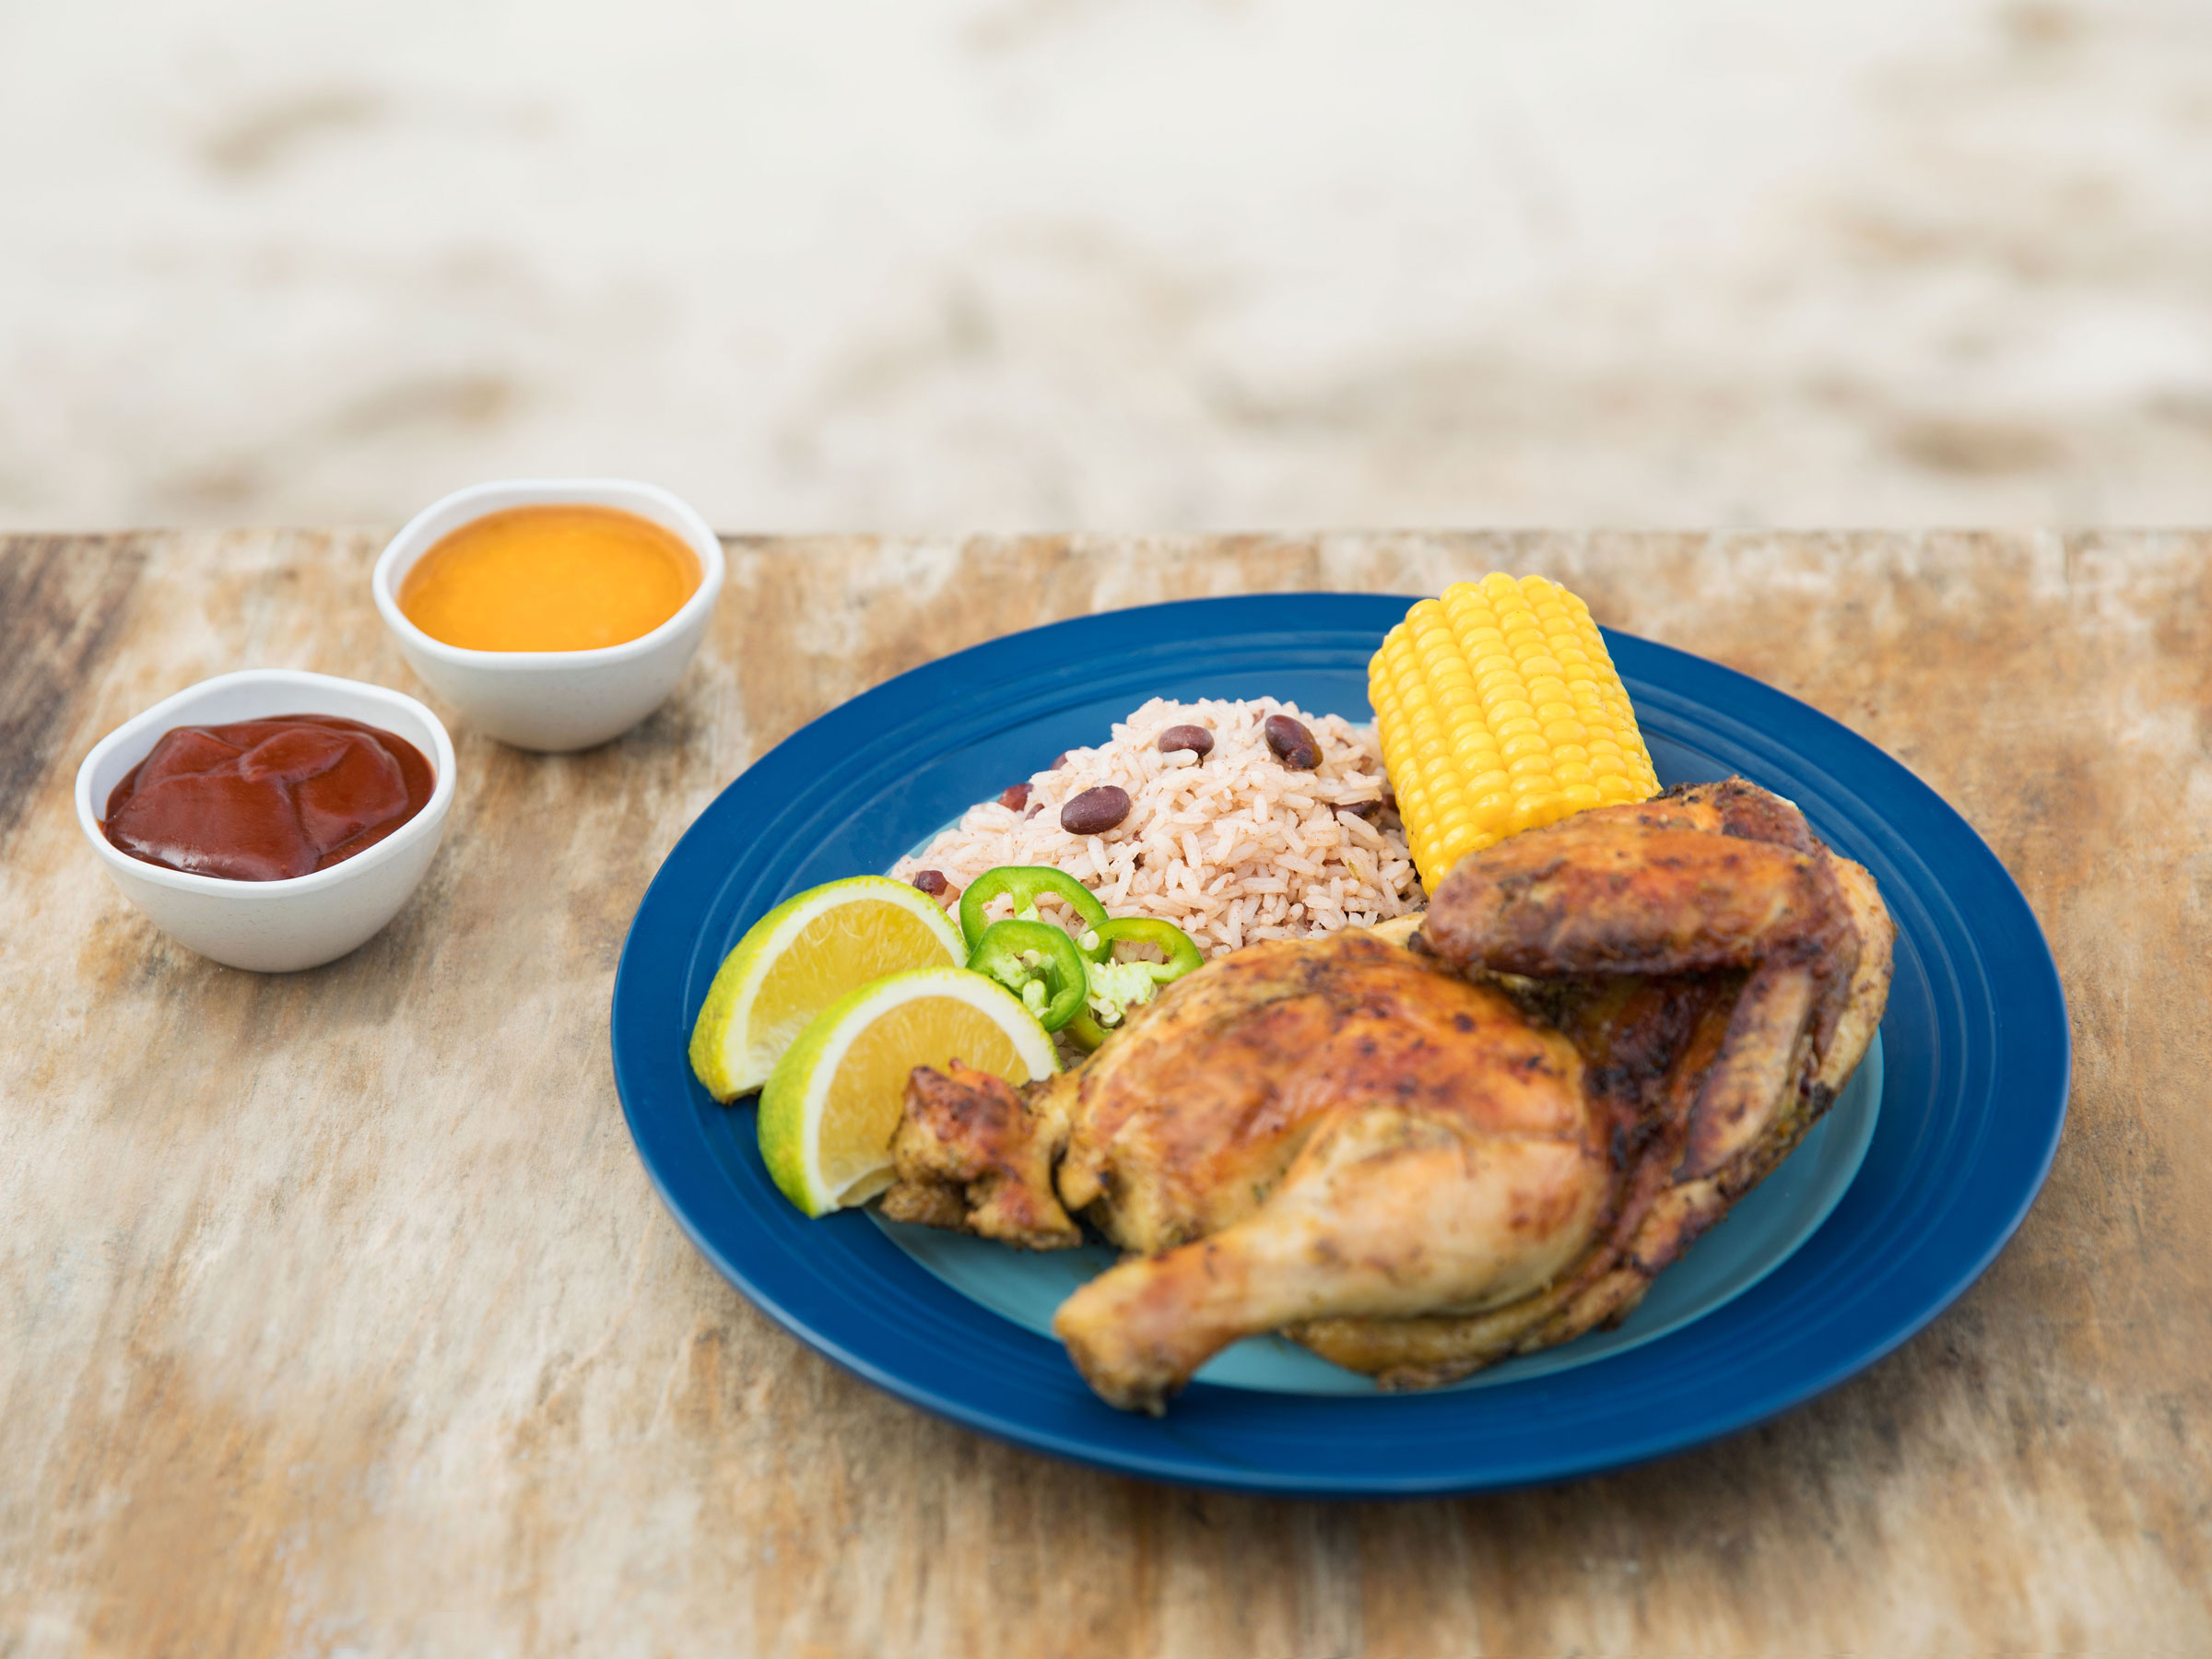 Montego Bay Restaurant with Jamaican Jerk Chicken